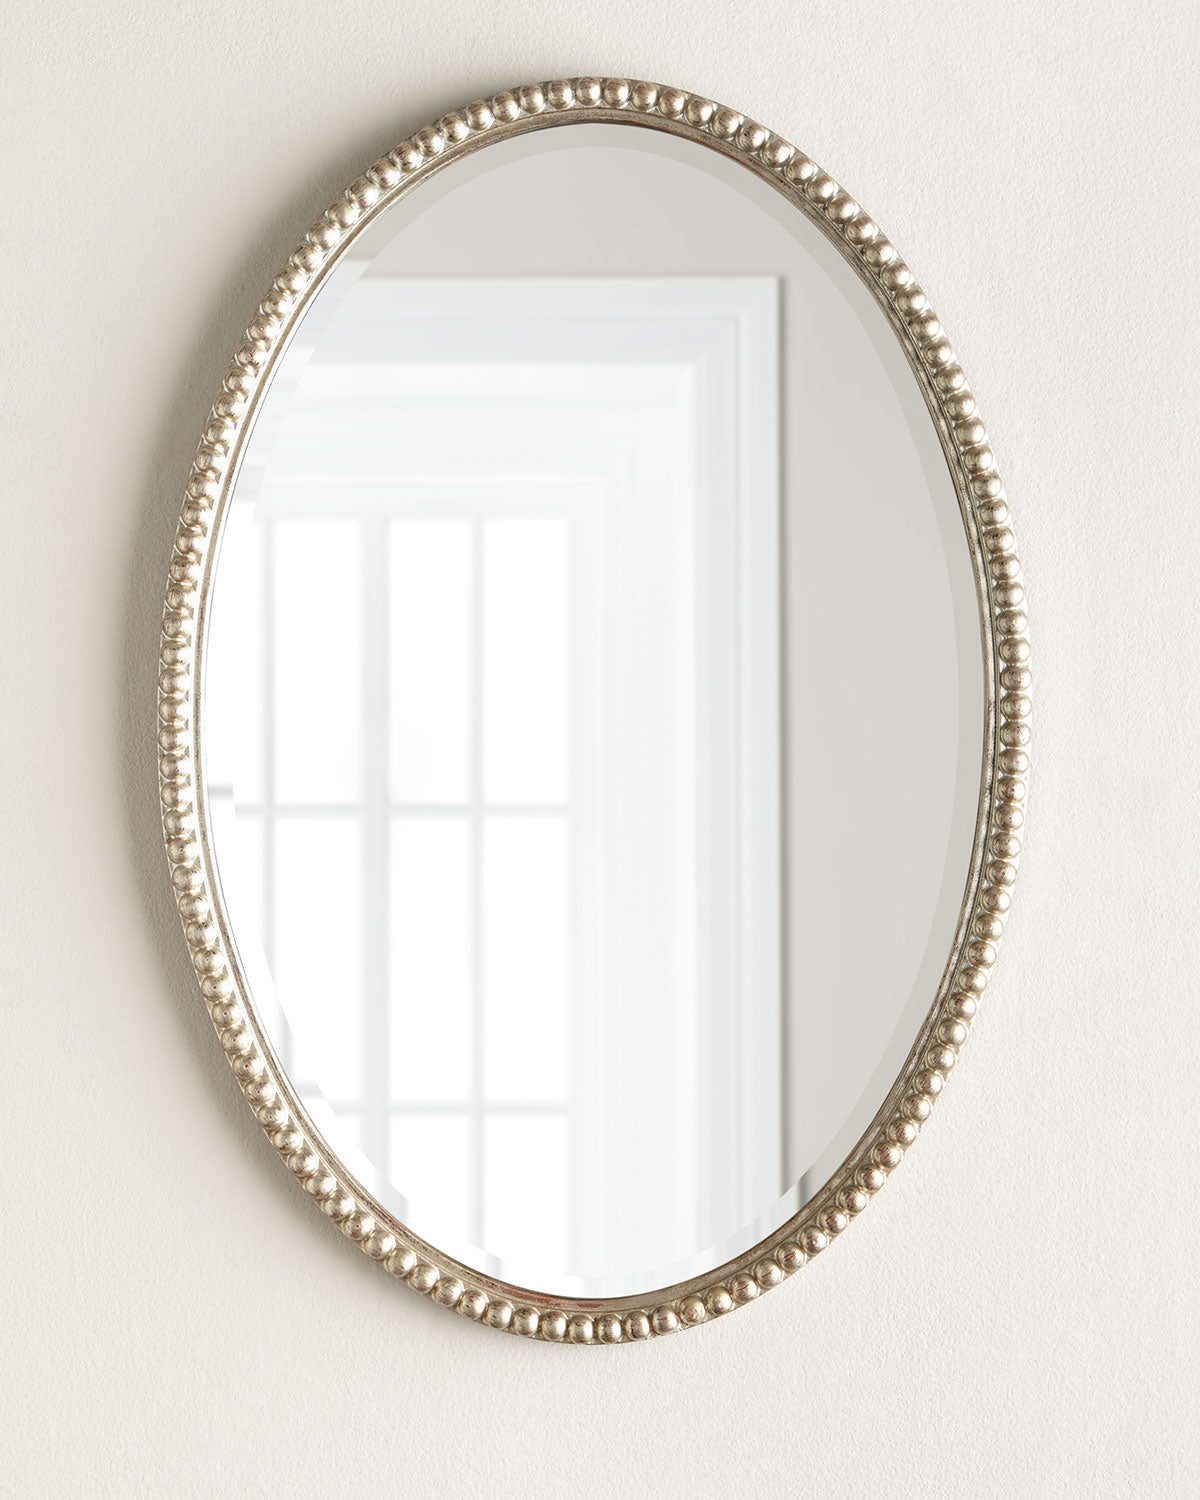 Элегантное настенное зеркало "Глостер" овальной формы c серебряной рамой в виде бисера.